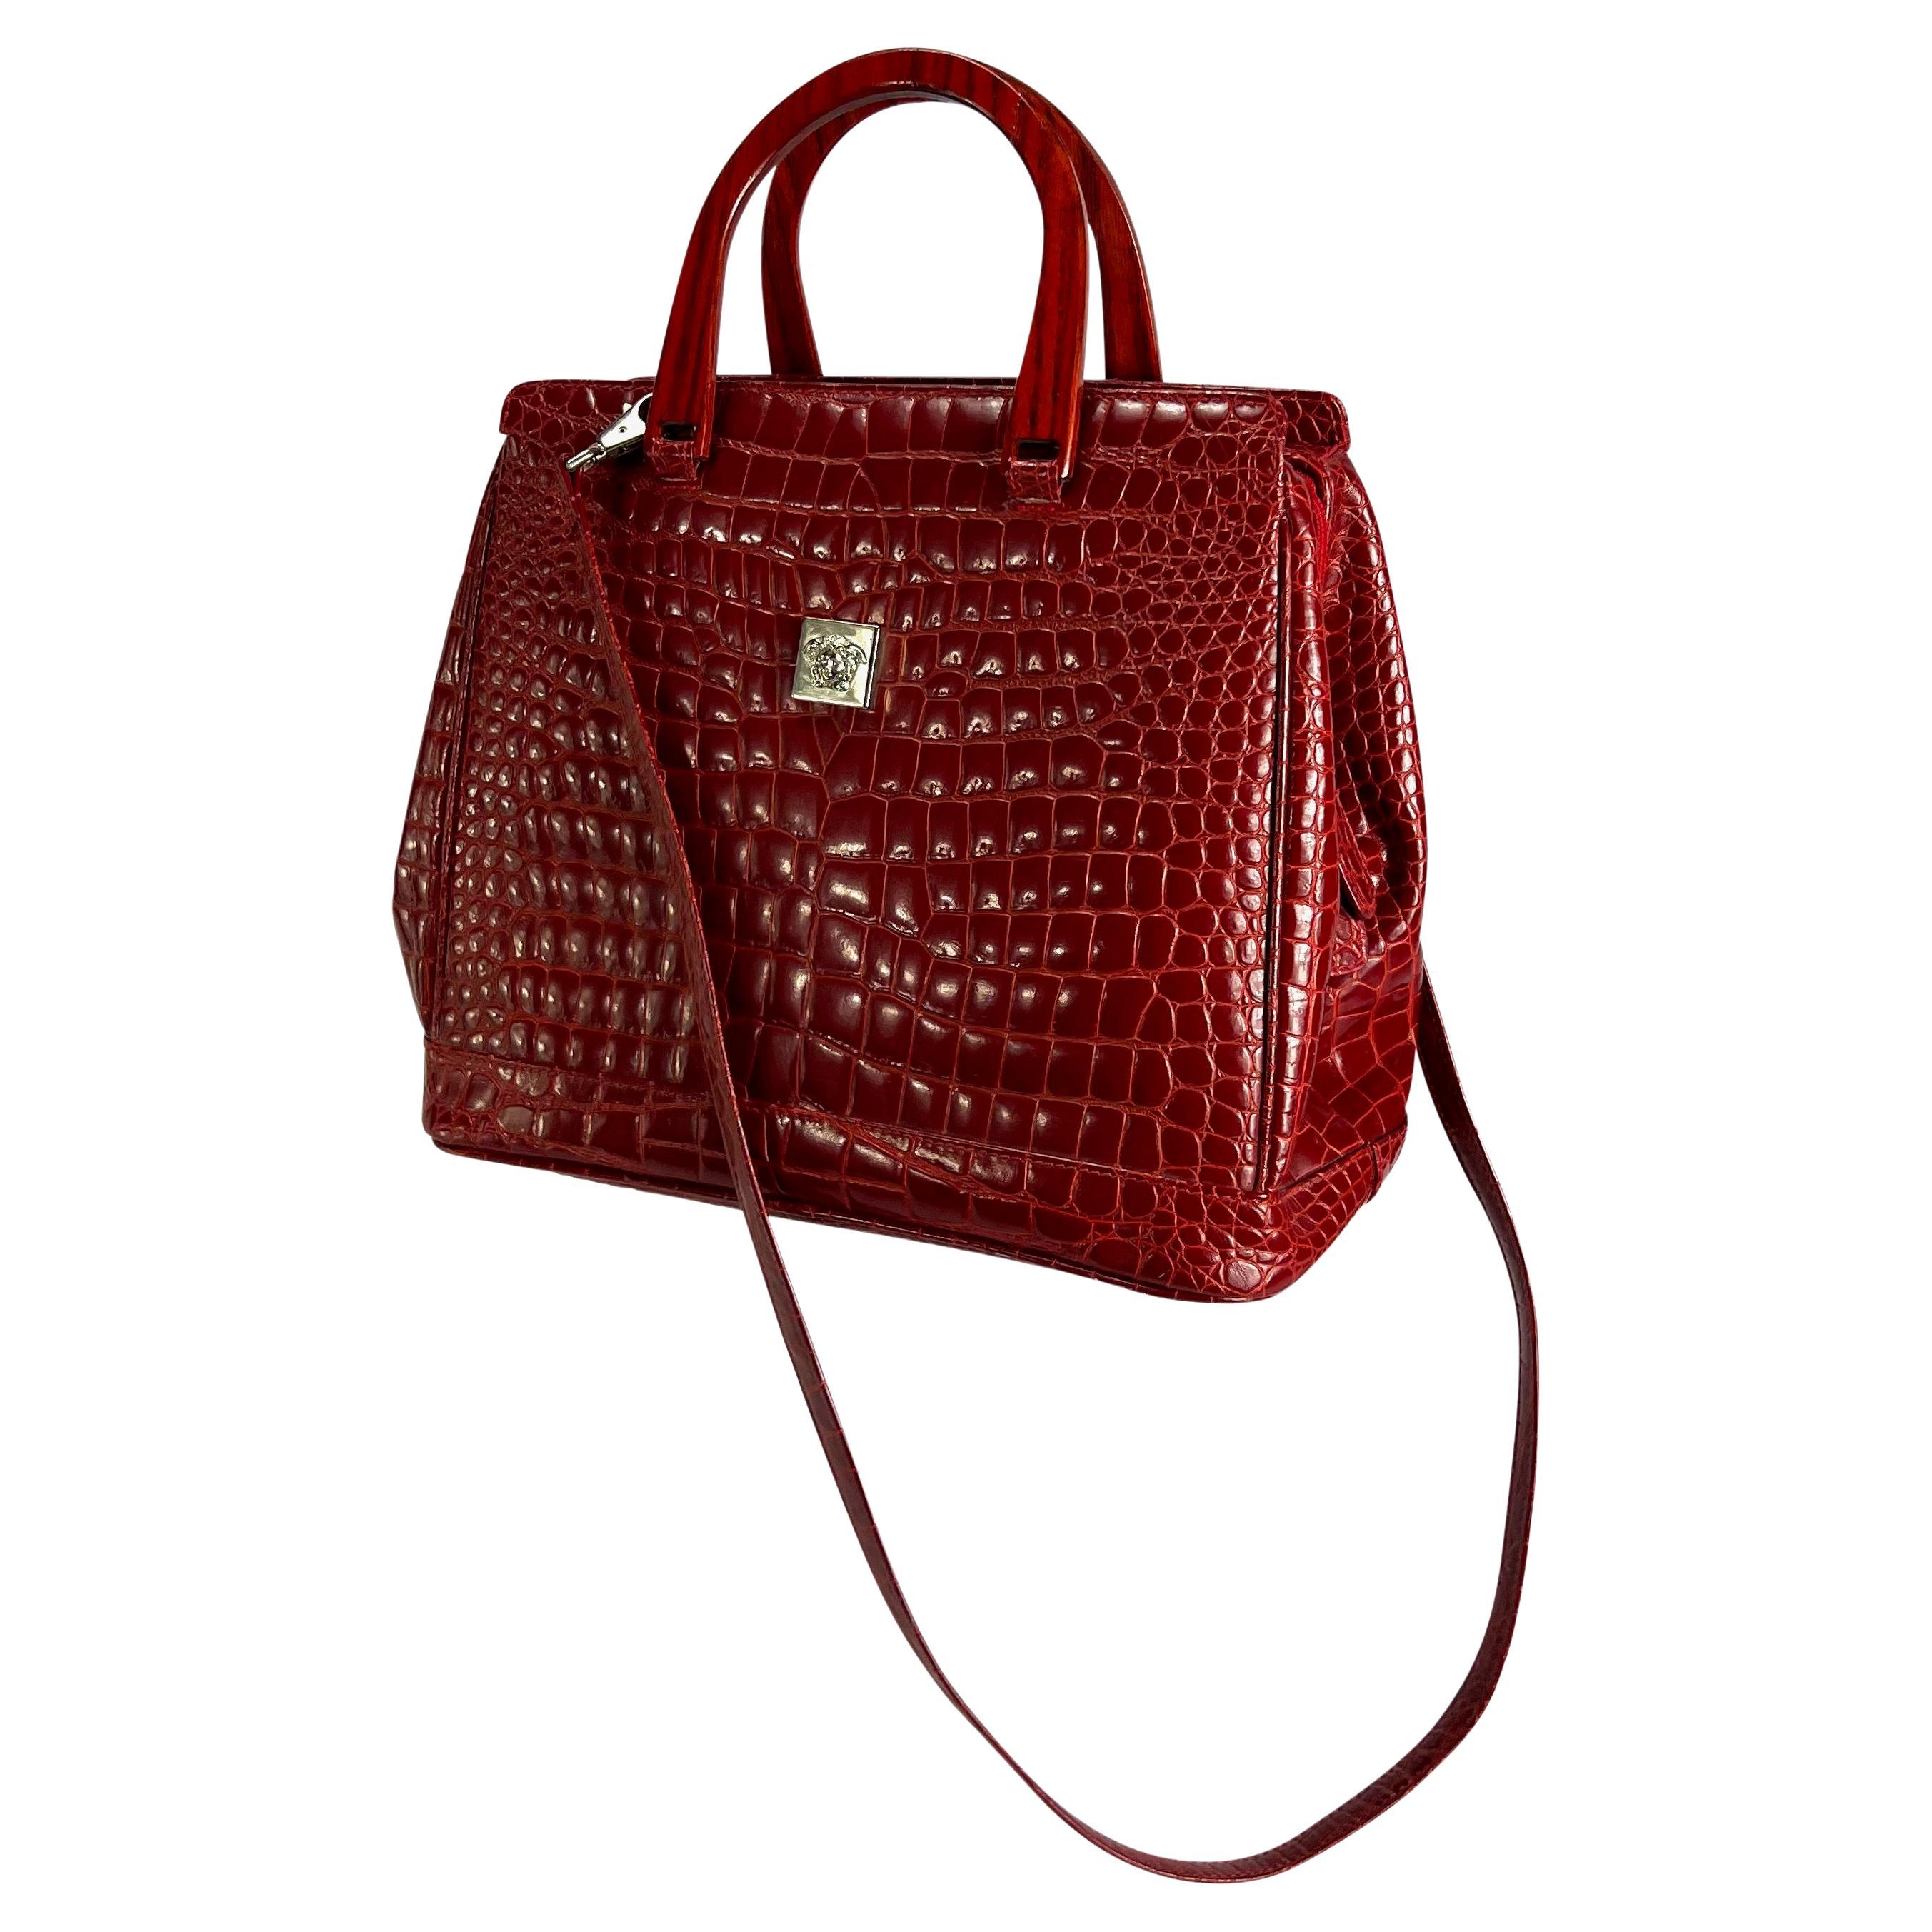 Nous vous présentons un fabuleux sac à main à poignée supérieure en crocodile gaufré rouge vif, conçu par Gianni Versace. Ce sac présente des anses supérieures en bois rouge, une bandoulière plus longue amovible et une plaque Medusa Versace en